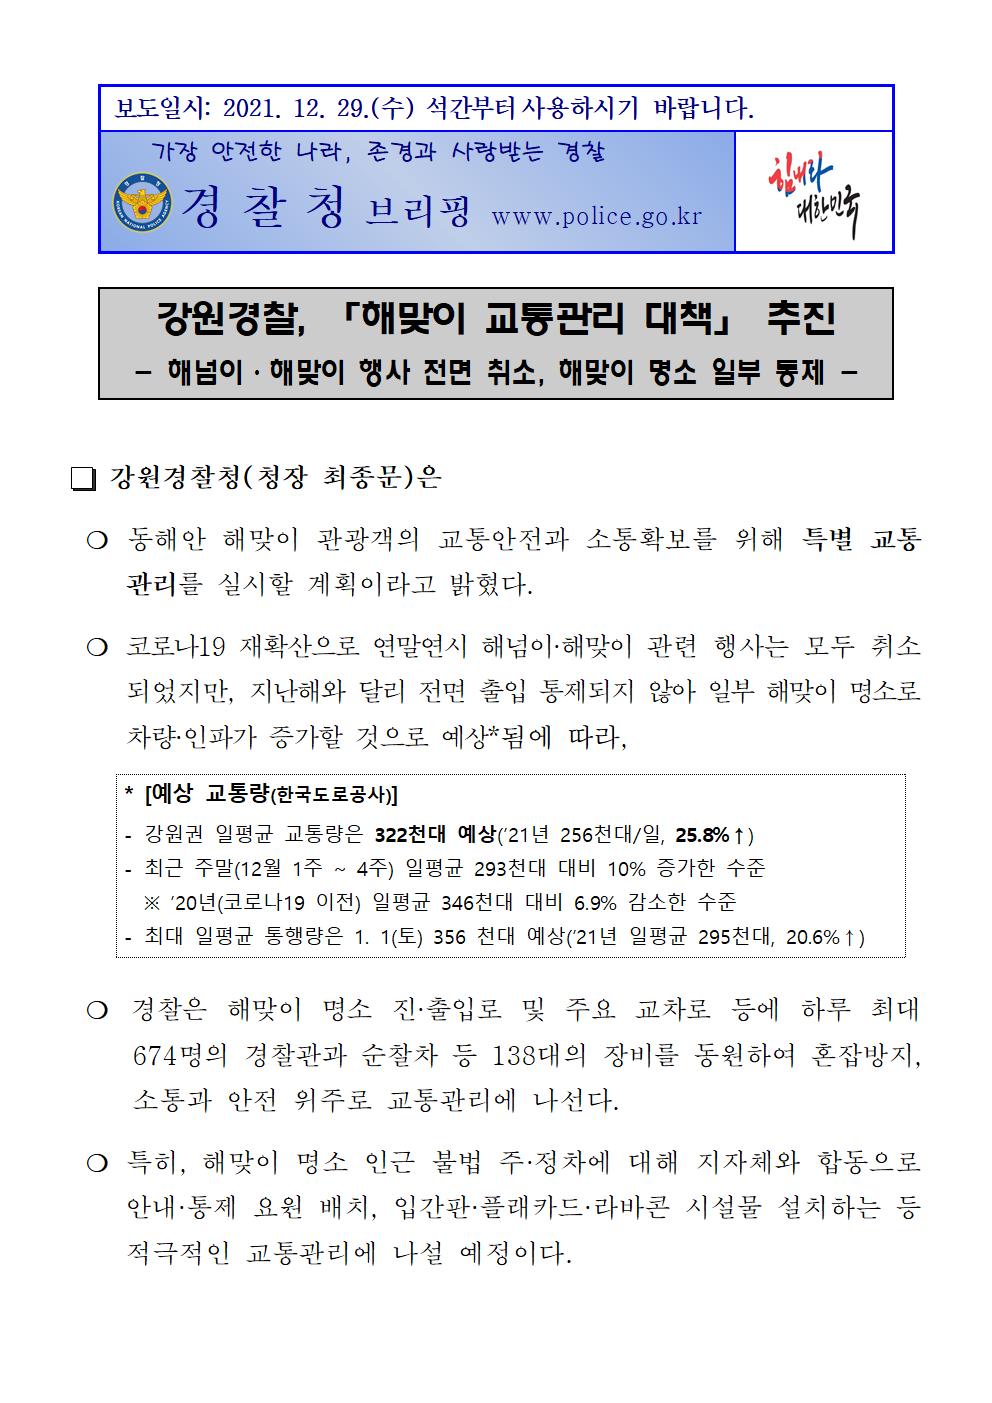 강원경찰, 해맞이 교통관리 대책 추진-강원경찰 해맞이 교통관리 대책 추진001